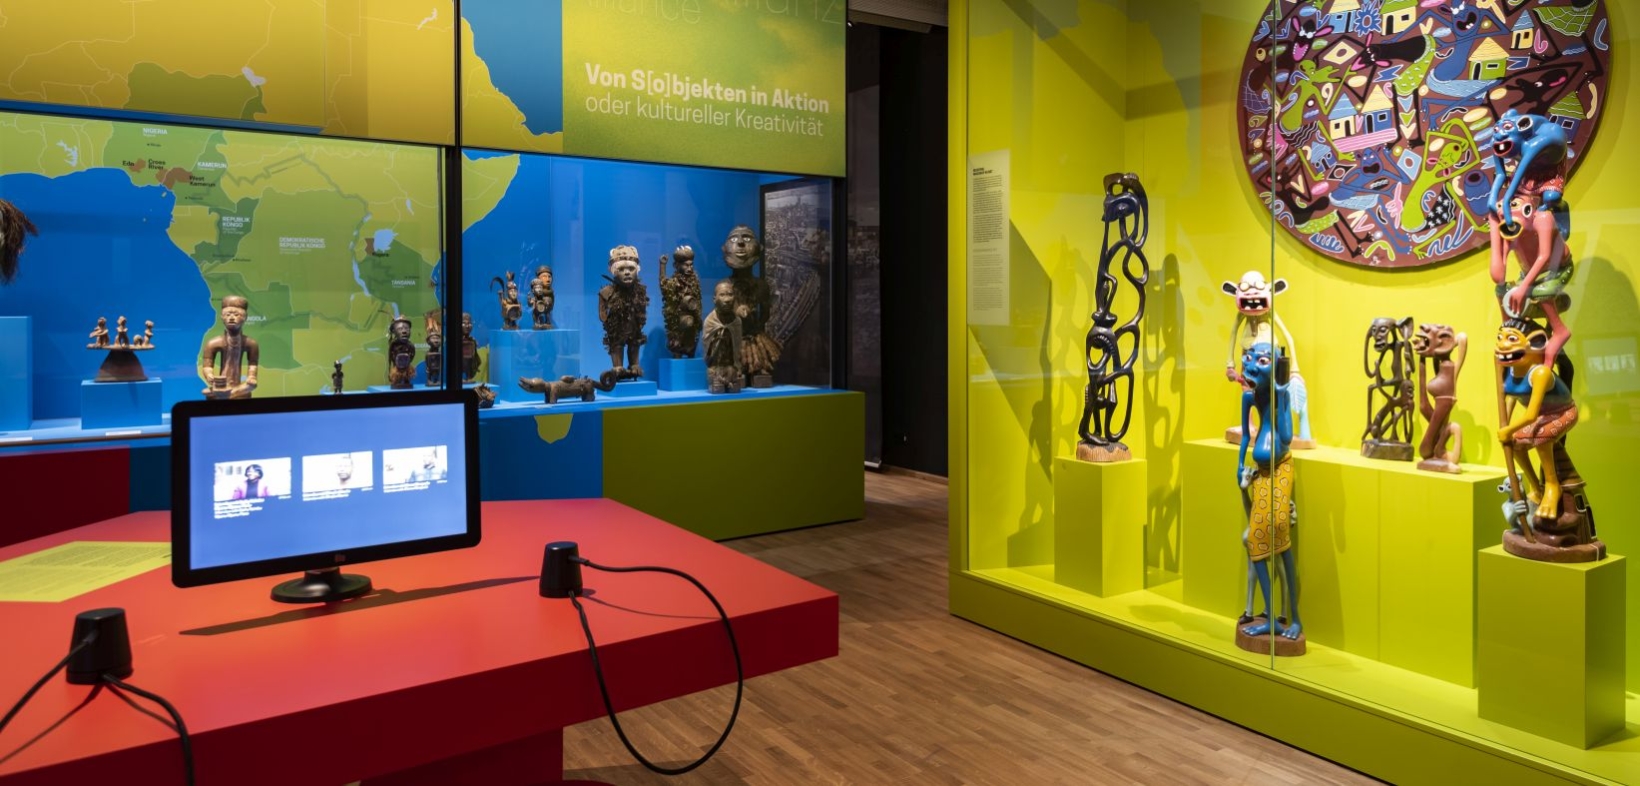 Blick in die Ausstellung "Wo ist Afrika?". Im Vordergrund Medienstation auf rotem Tisch, im Hintergrund Skulpturen in blau und grün gestalteten Vitrinen